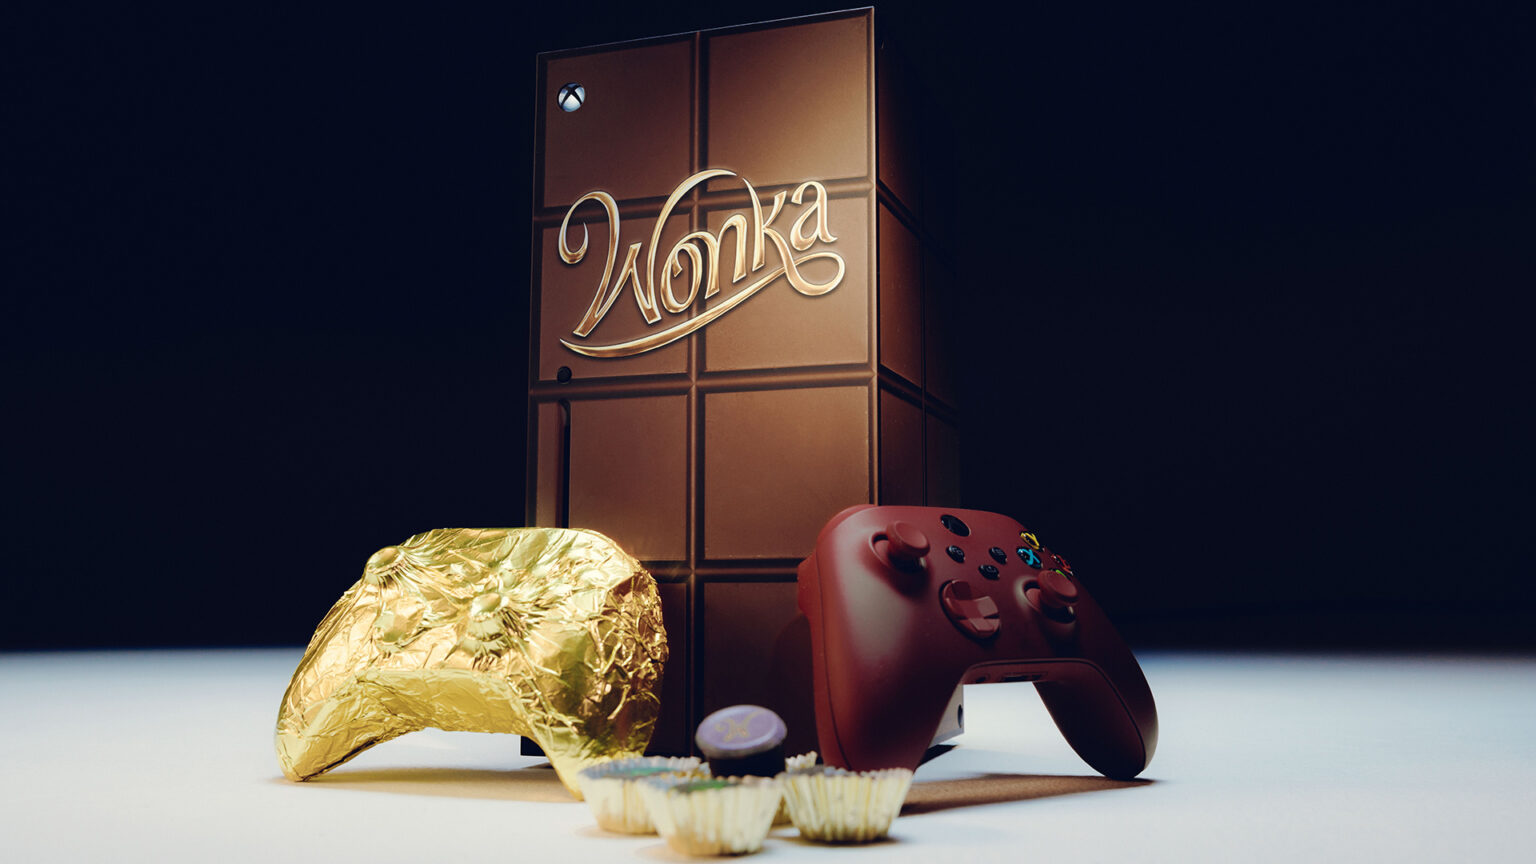 威利·旺卡的新产品线 Xbox赠予可食用巧克力足柄